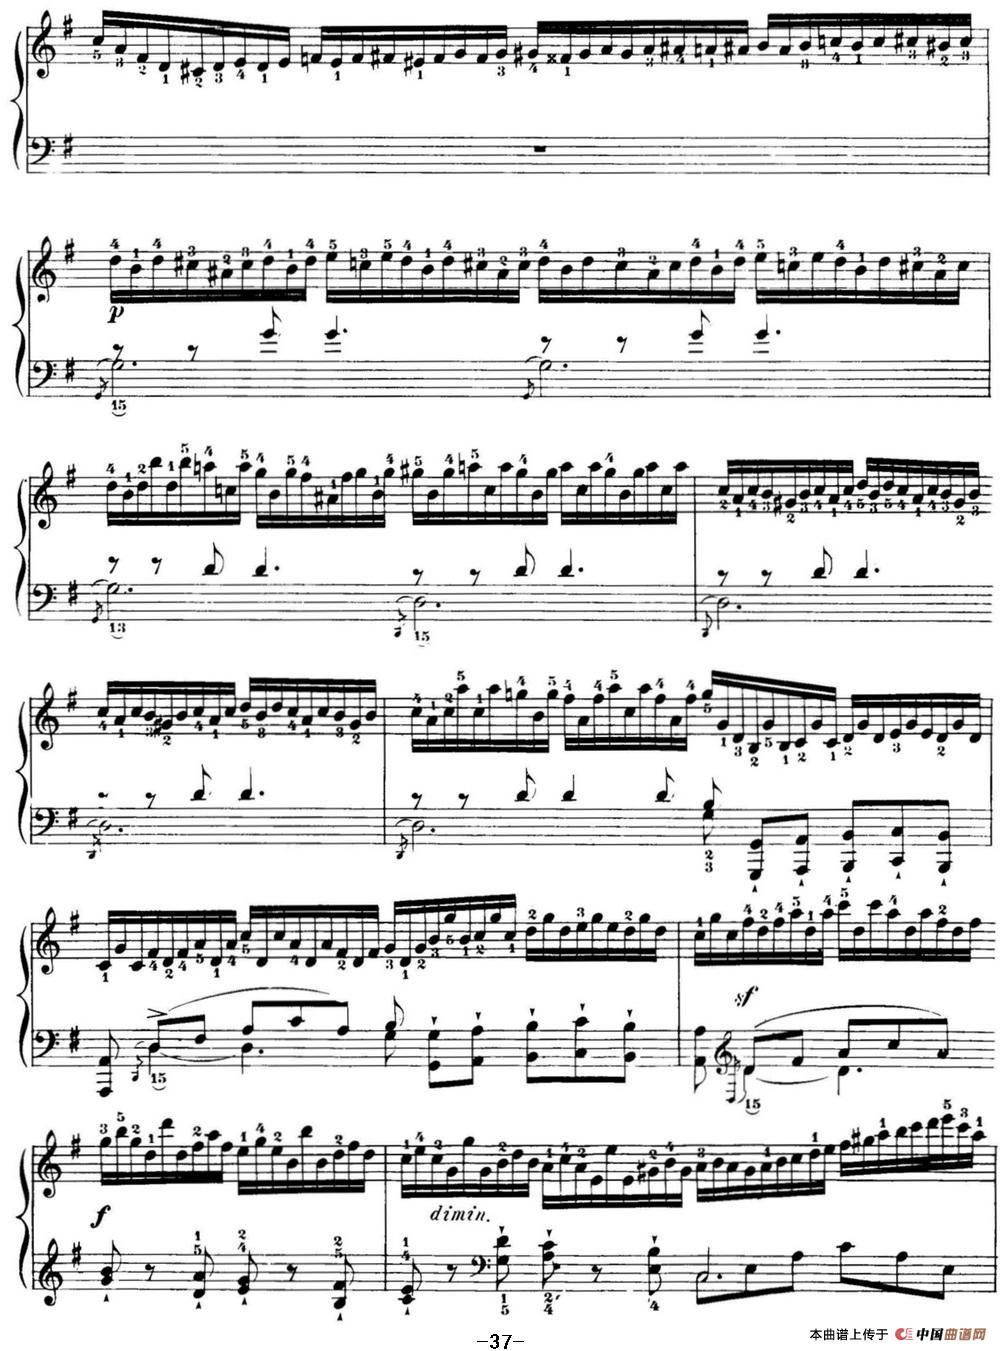 40首车尔尼Op.299钢琴快速练习曲（NO.16）(1)_C299_页面_037.jpg